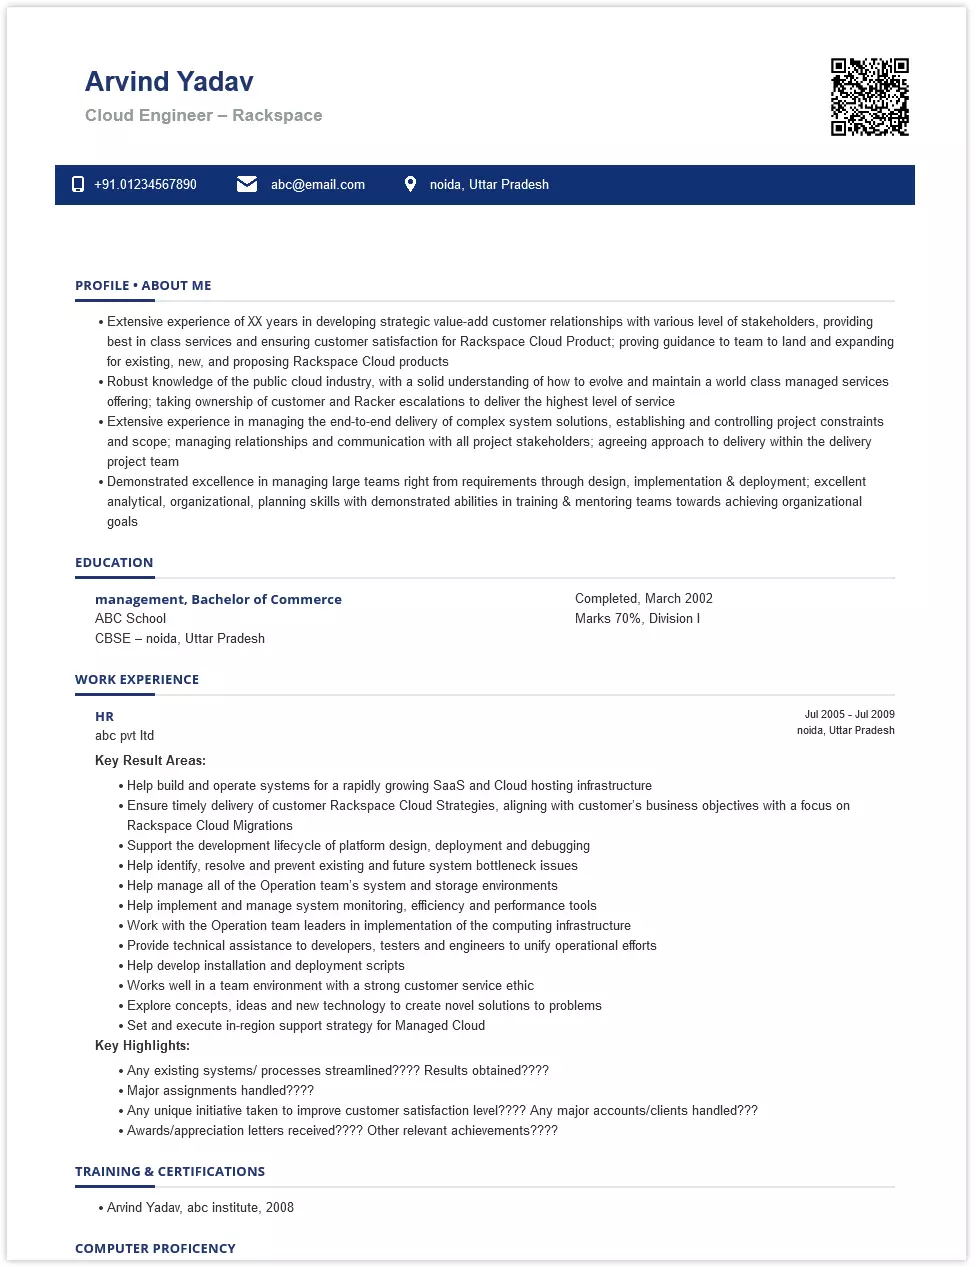 cloud engineer - rackspace resume samples